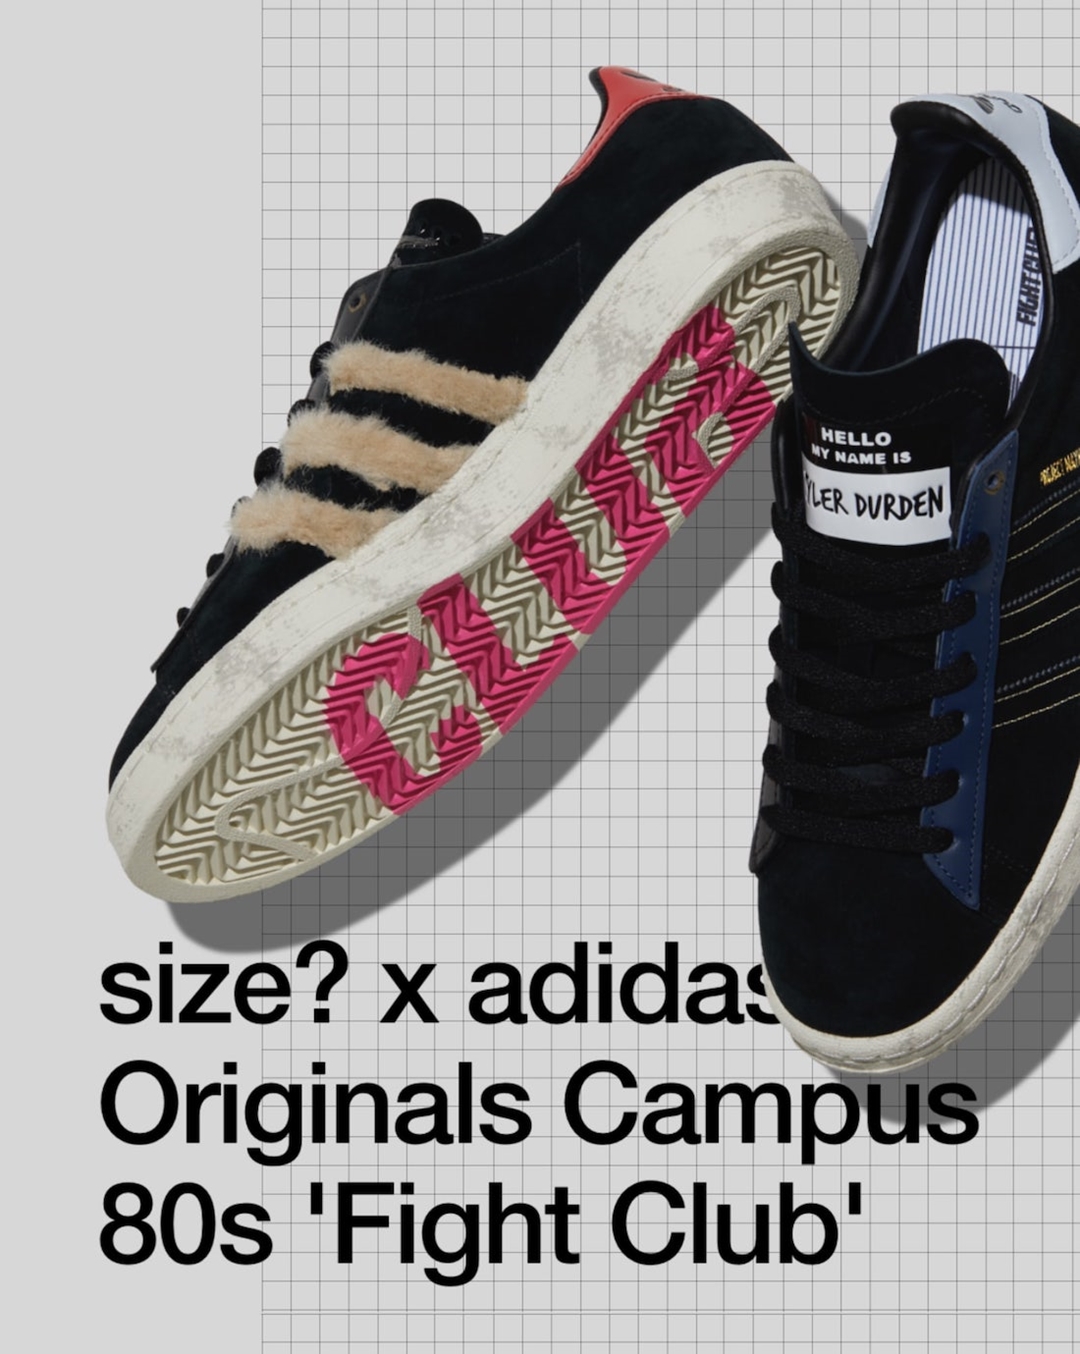 size? x adidas Originals CAMPUS 80s “Fight Club” (サイズ? アディダス オリジナル キャンパス 80s "ファイトクラブ")